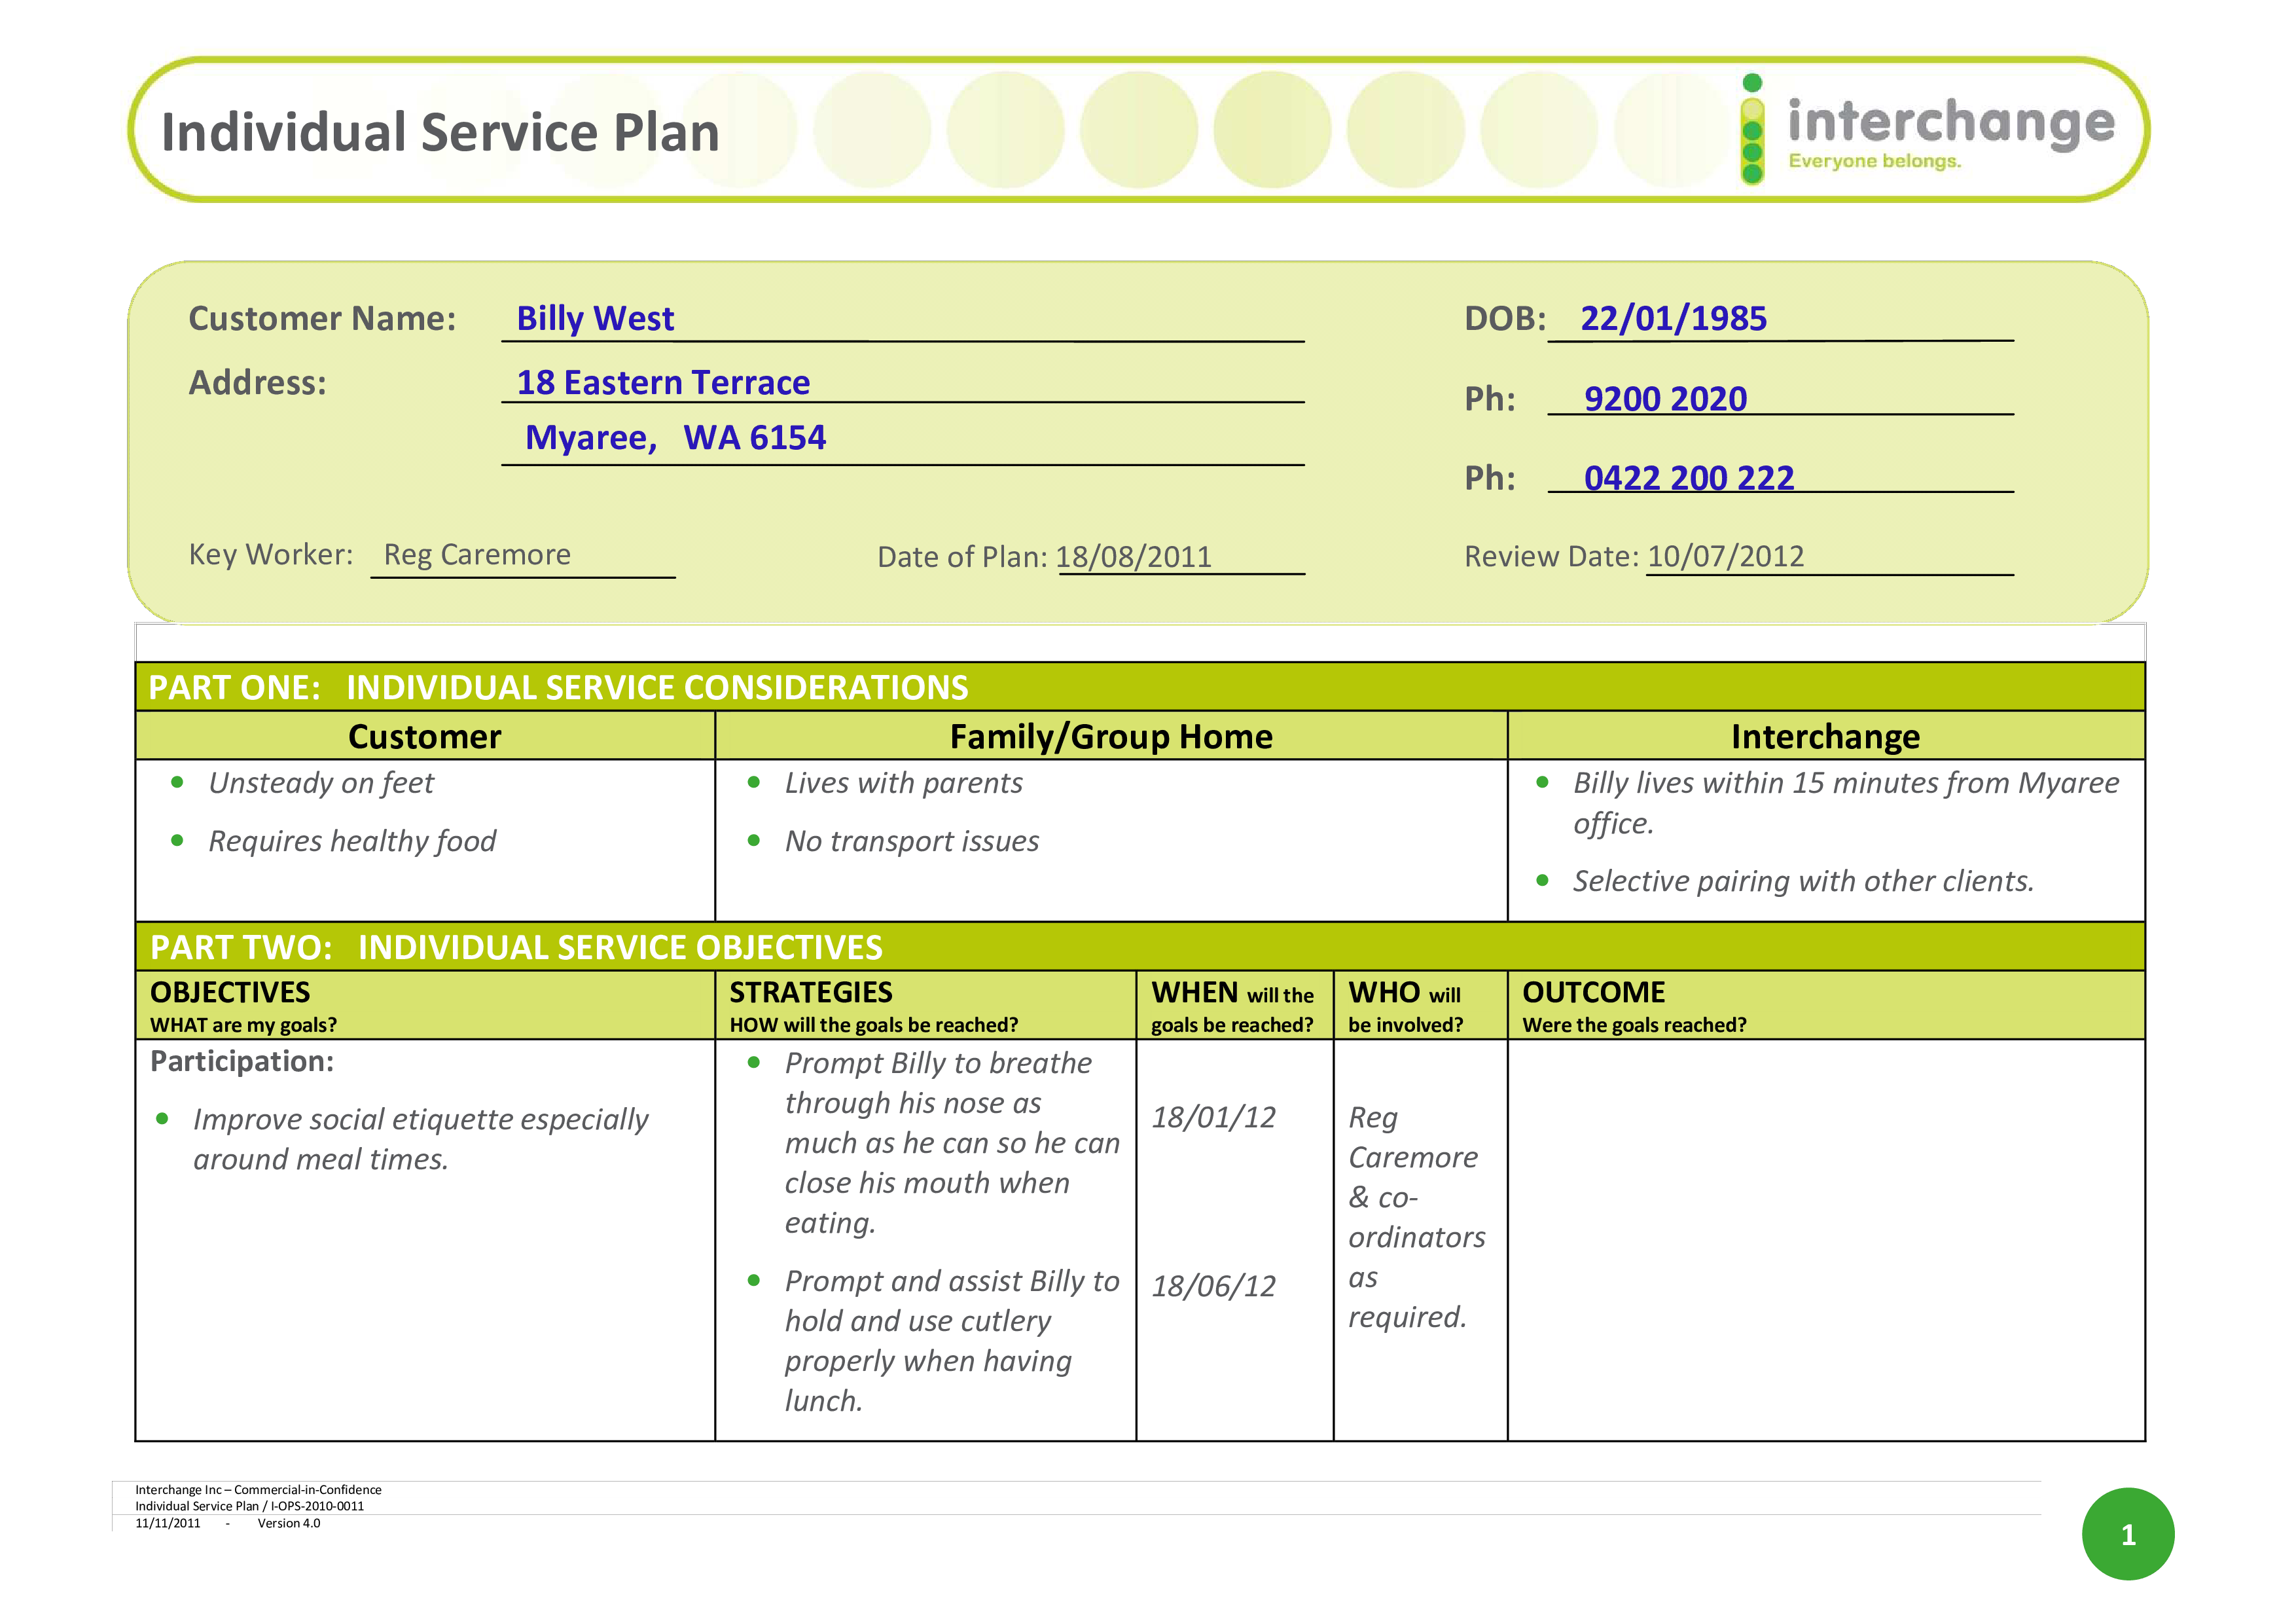 Individual Service Plan Templates at